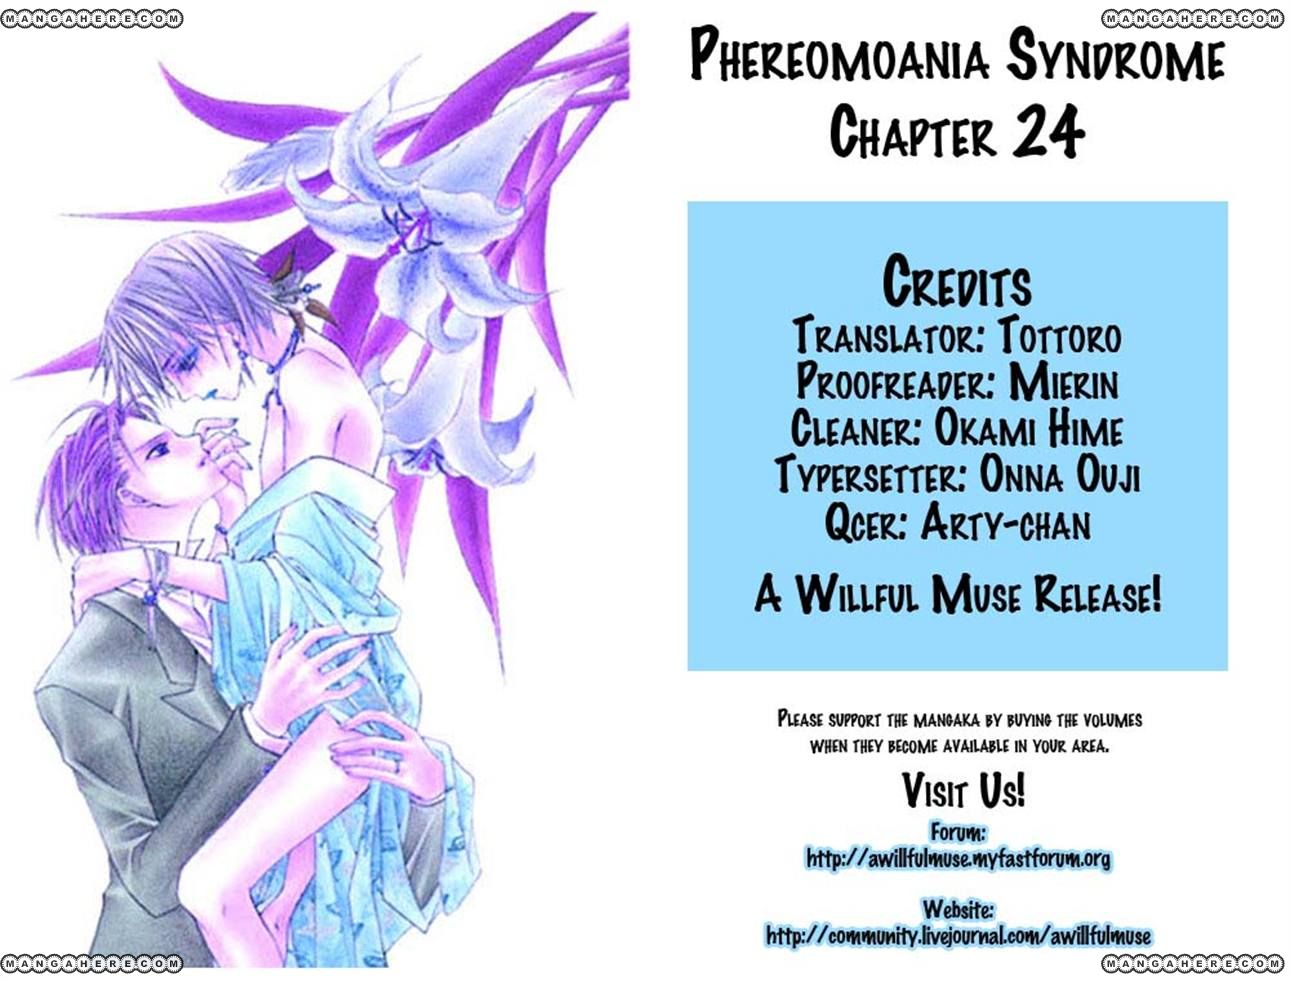 Pheromomania Syndrome 24